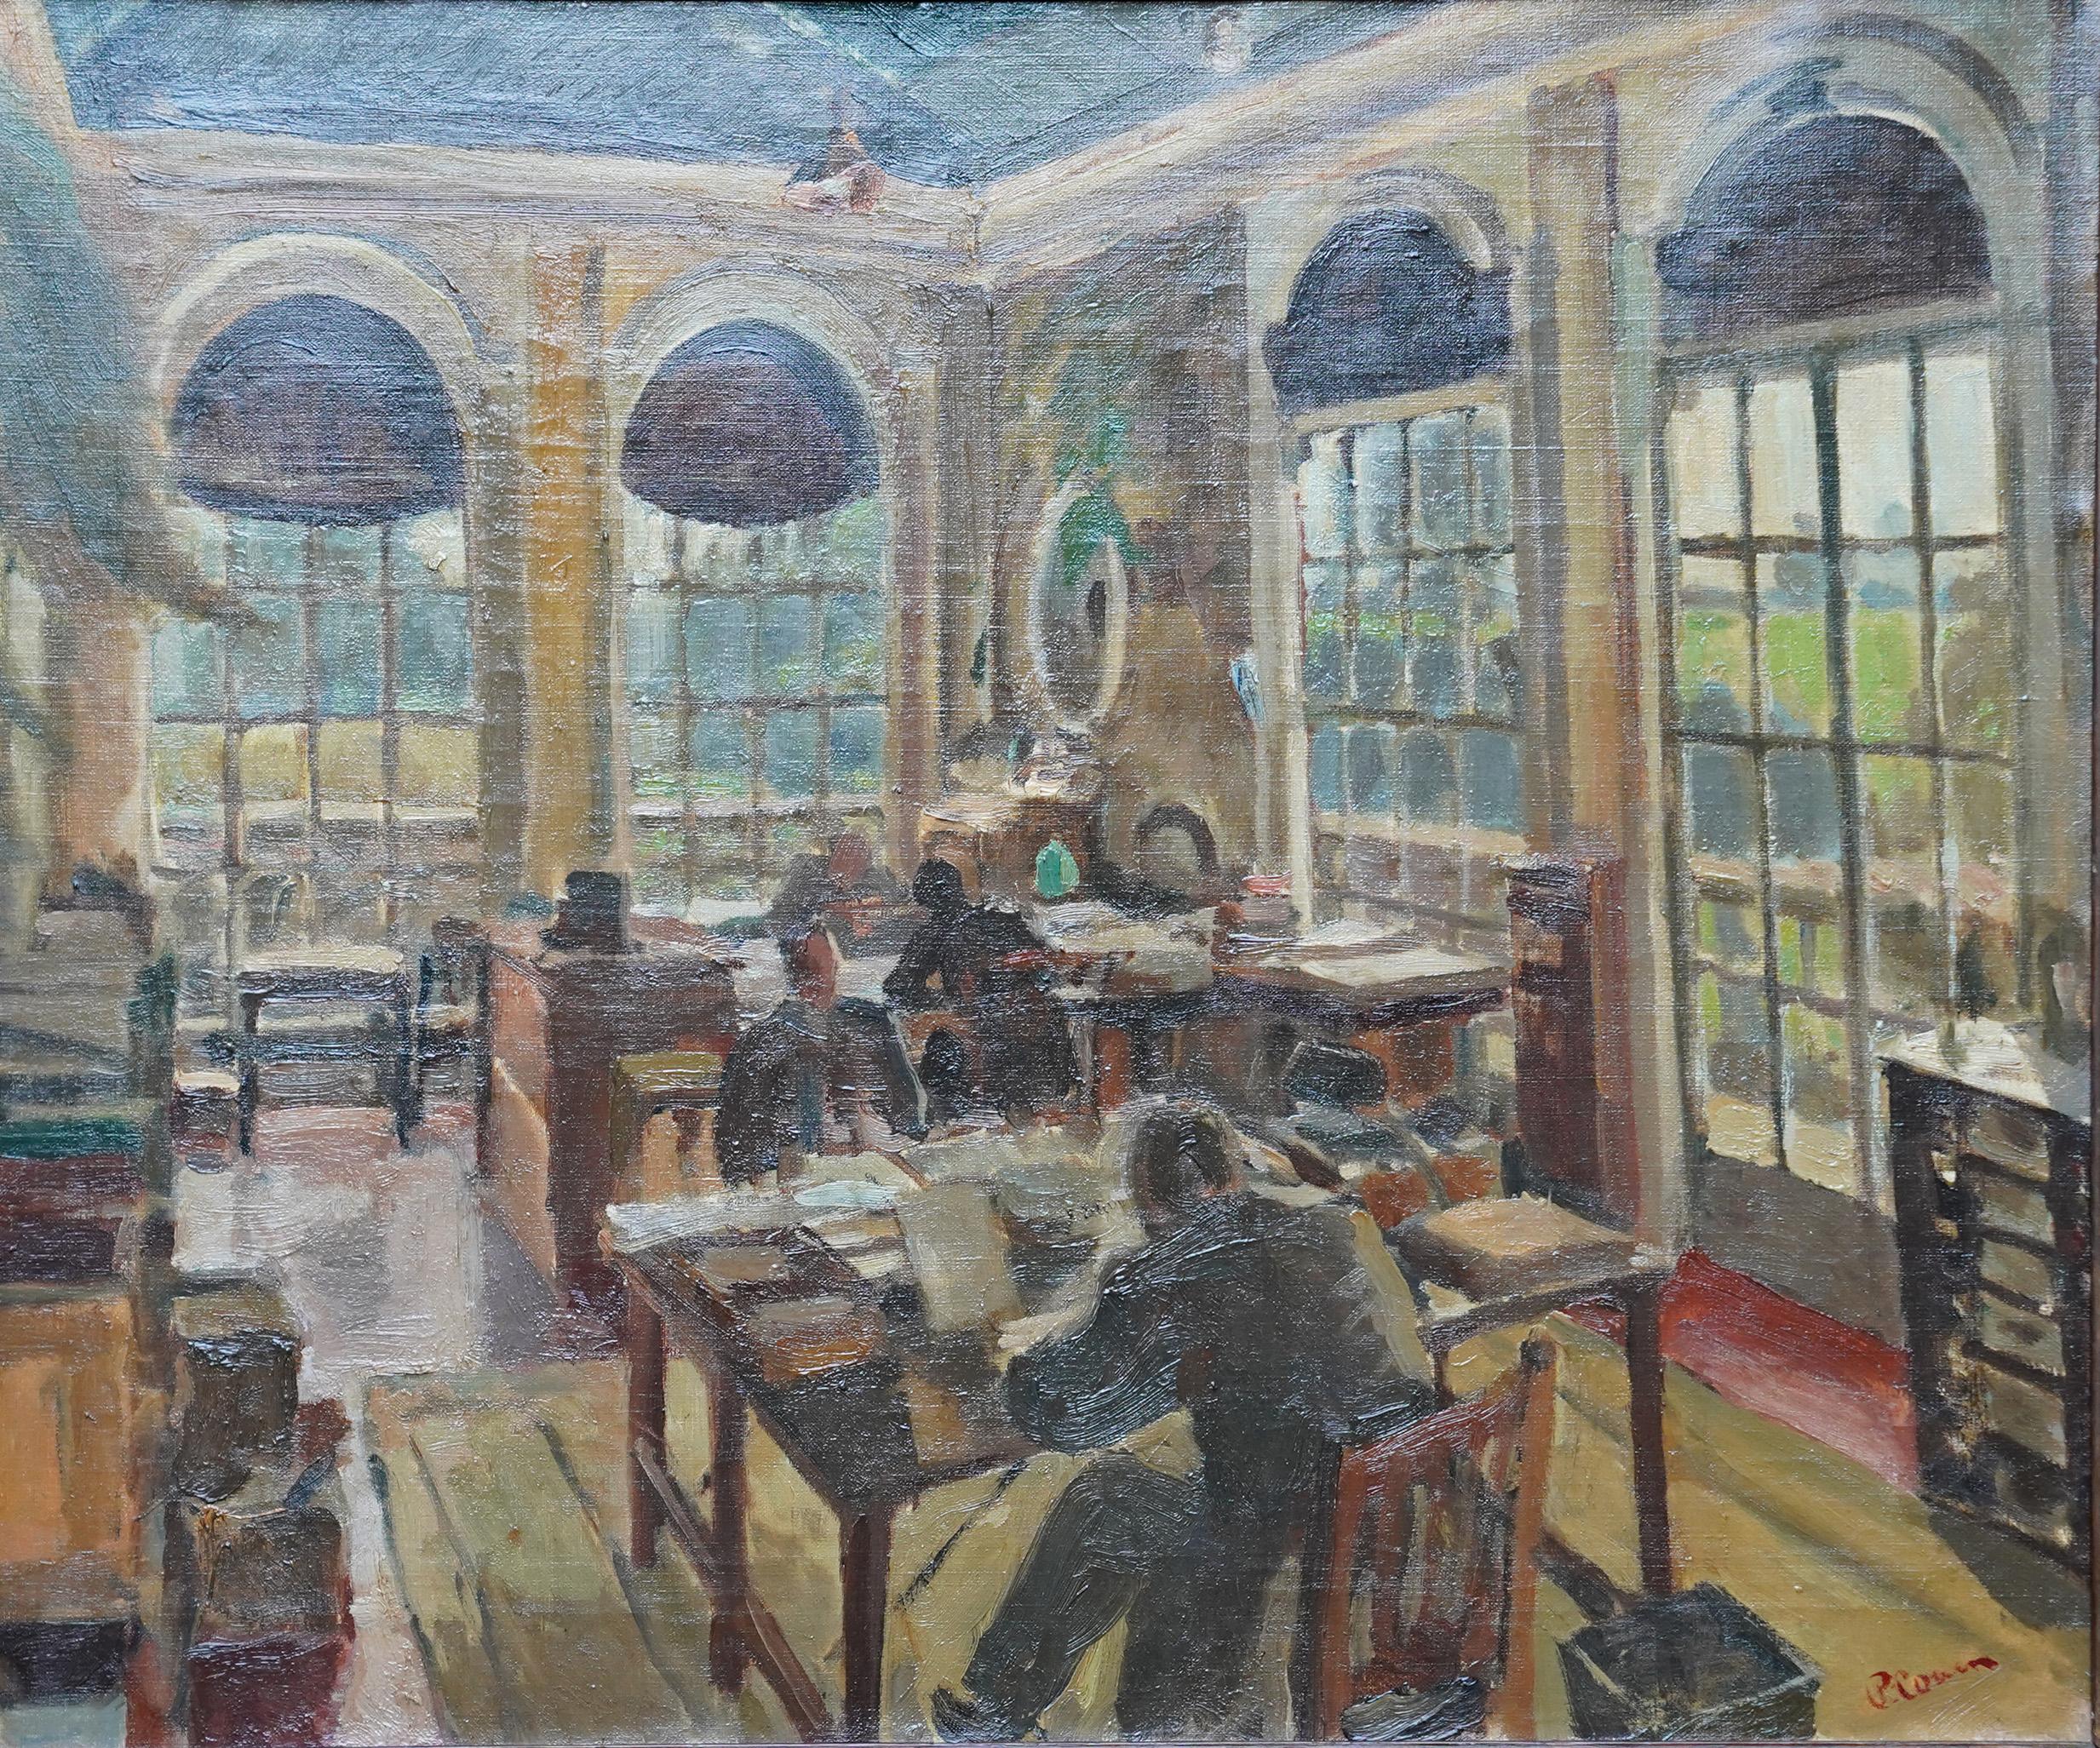 Büro-Interieur – britisches Ölgemälde der Slade-Schule, jüdische Kunst, 1920er Jahre – Painting von Pyzer Cowen